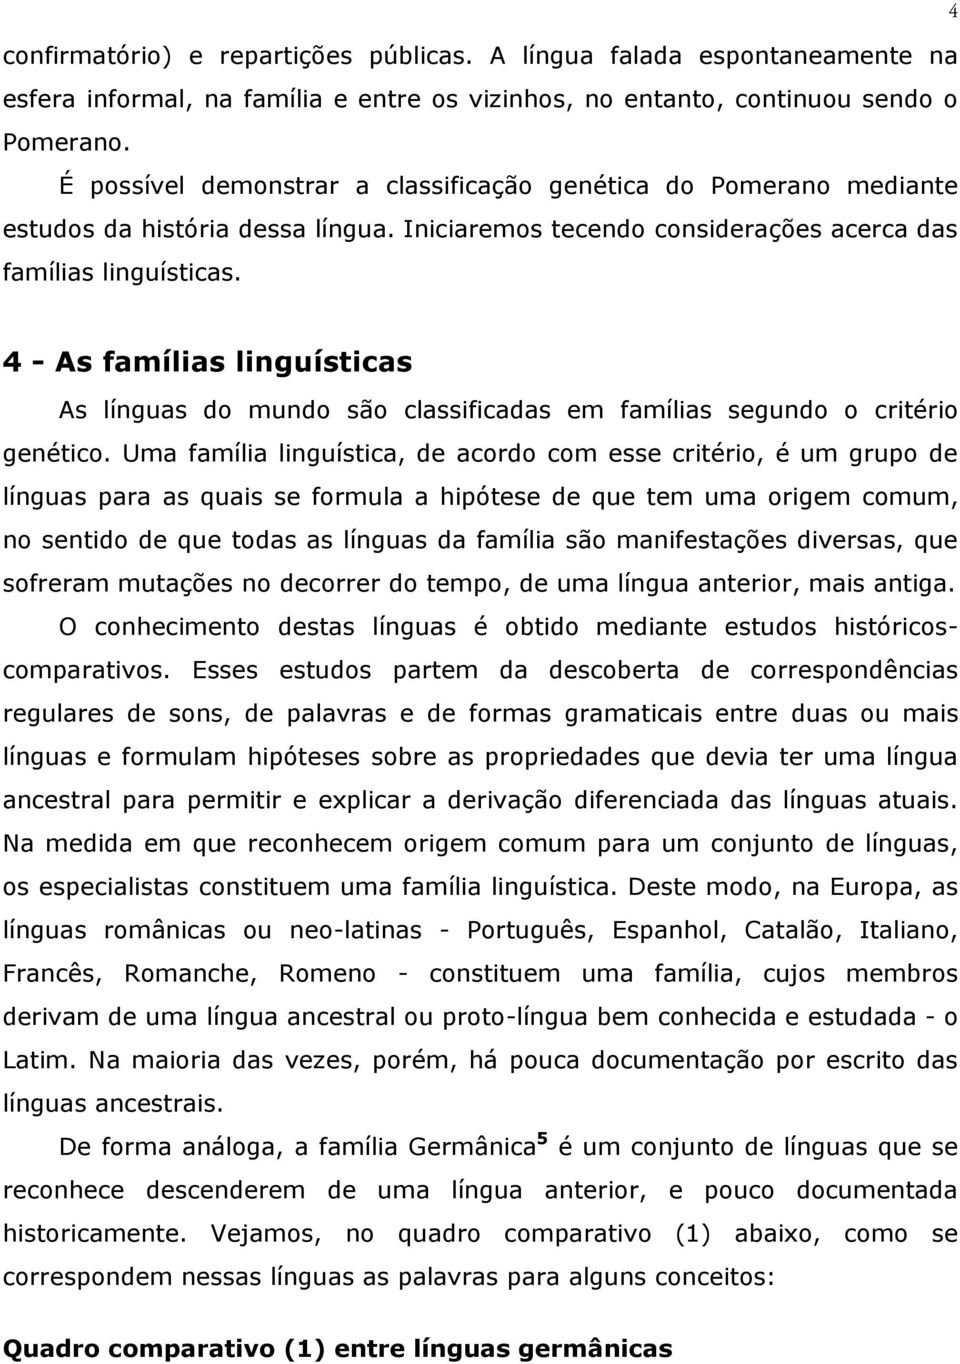 4 - As famílias linguísticas As línguas do mundo são classificadas em famílias segundo o critério genético.